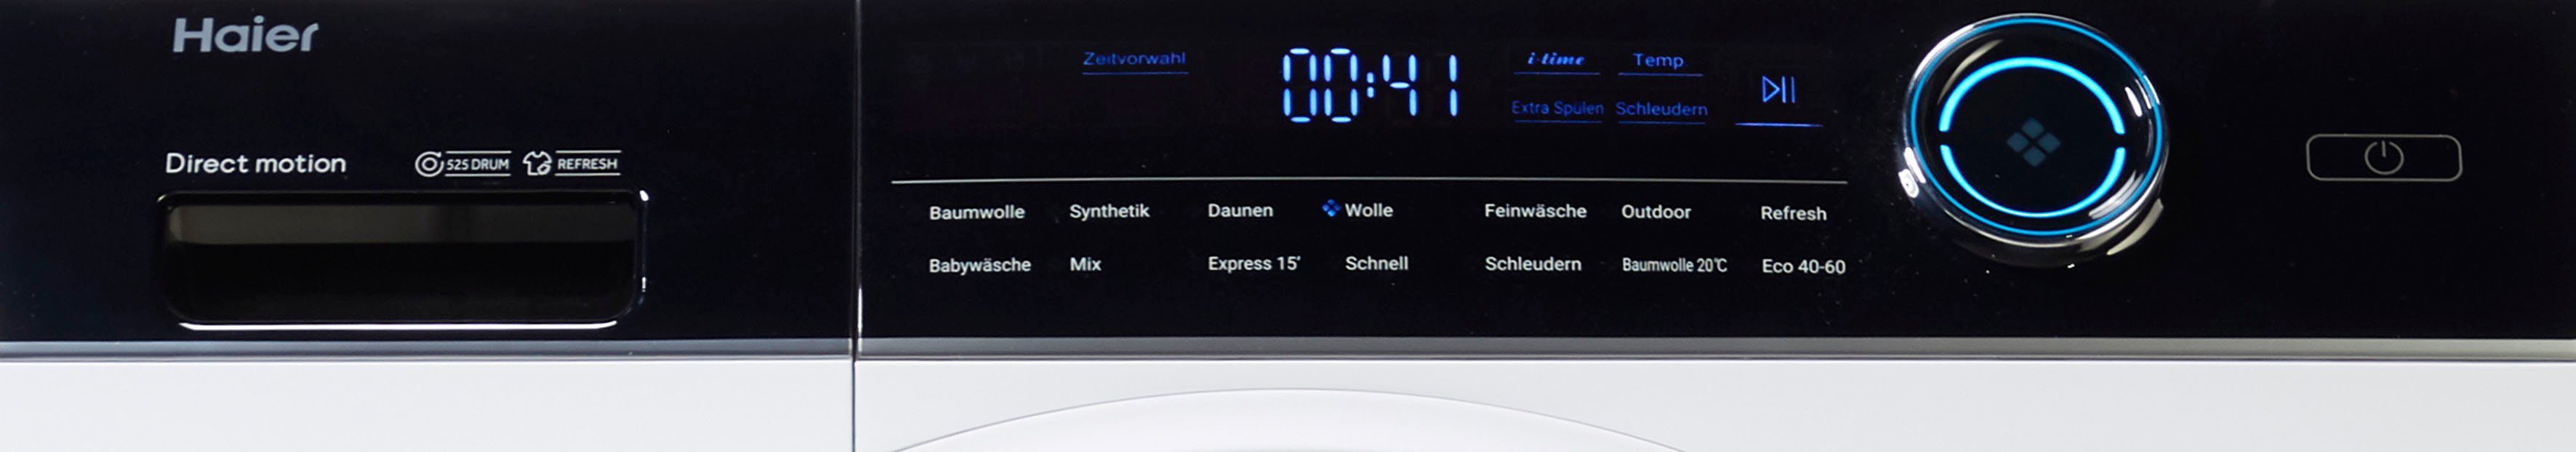 1400 Waschmaschine 9 U/min kg, HW90-B14979, Haier